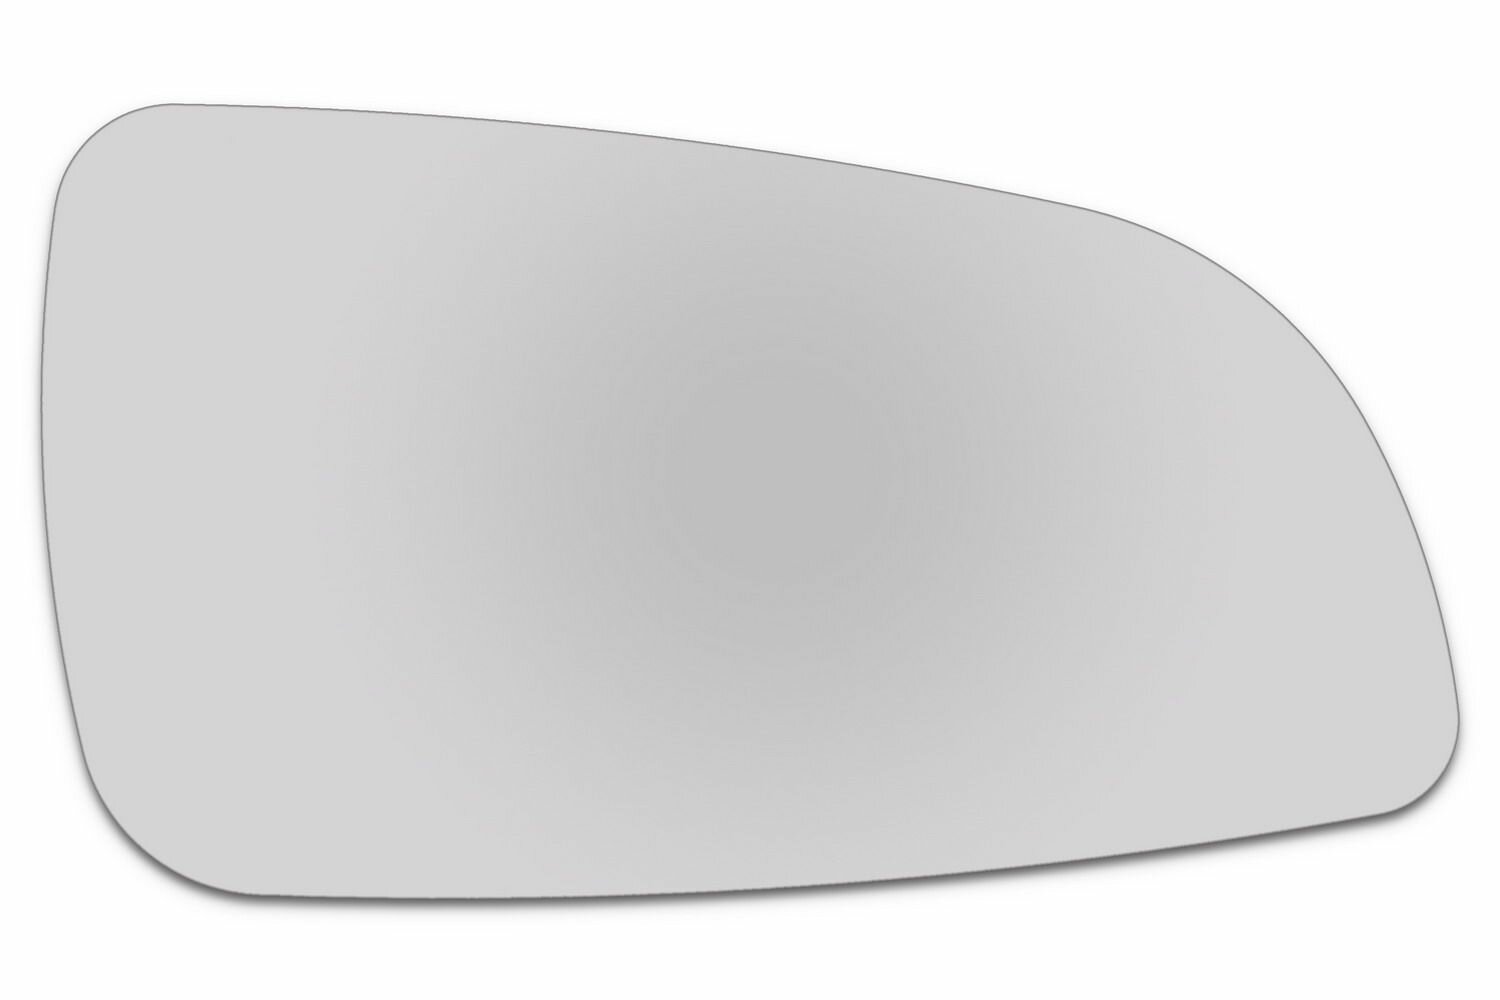 Зеркальный элемент правый OPEL Astra H (04-09) сфера нейтральный без обогрева. Размер зеркального элемента по центральной оси: высота - 96 мм, длина - 172 мм.